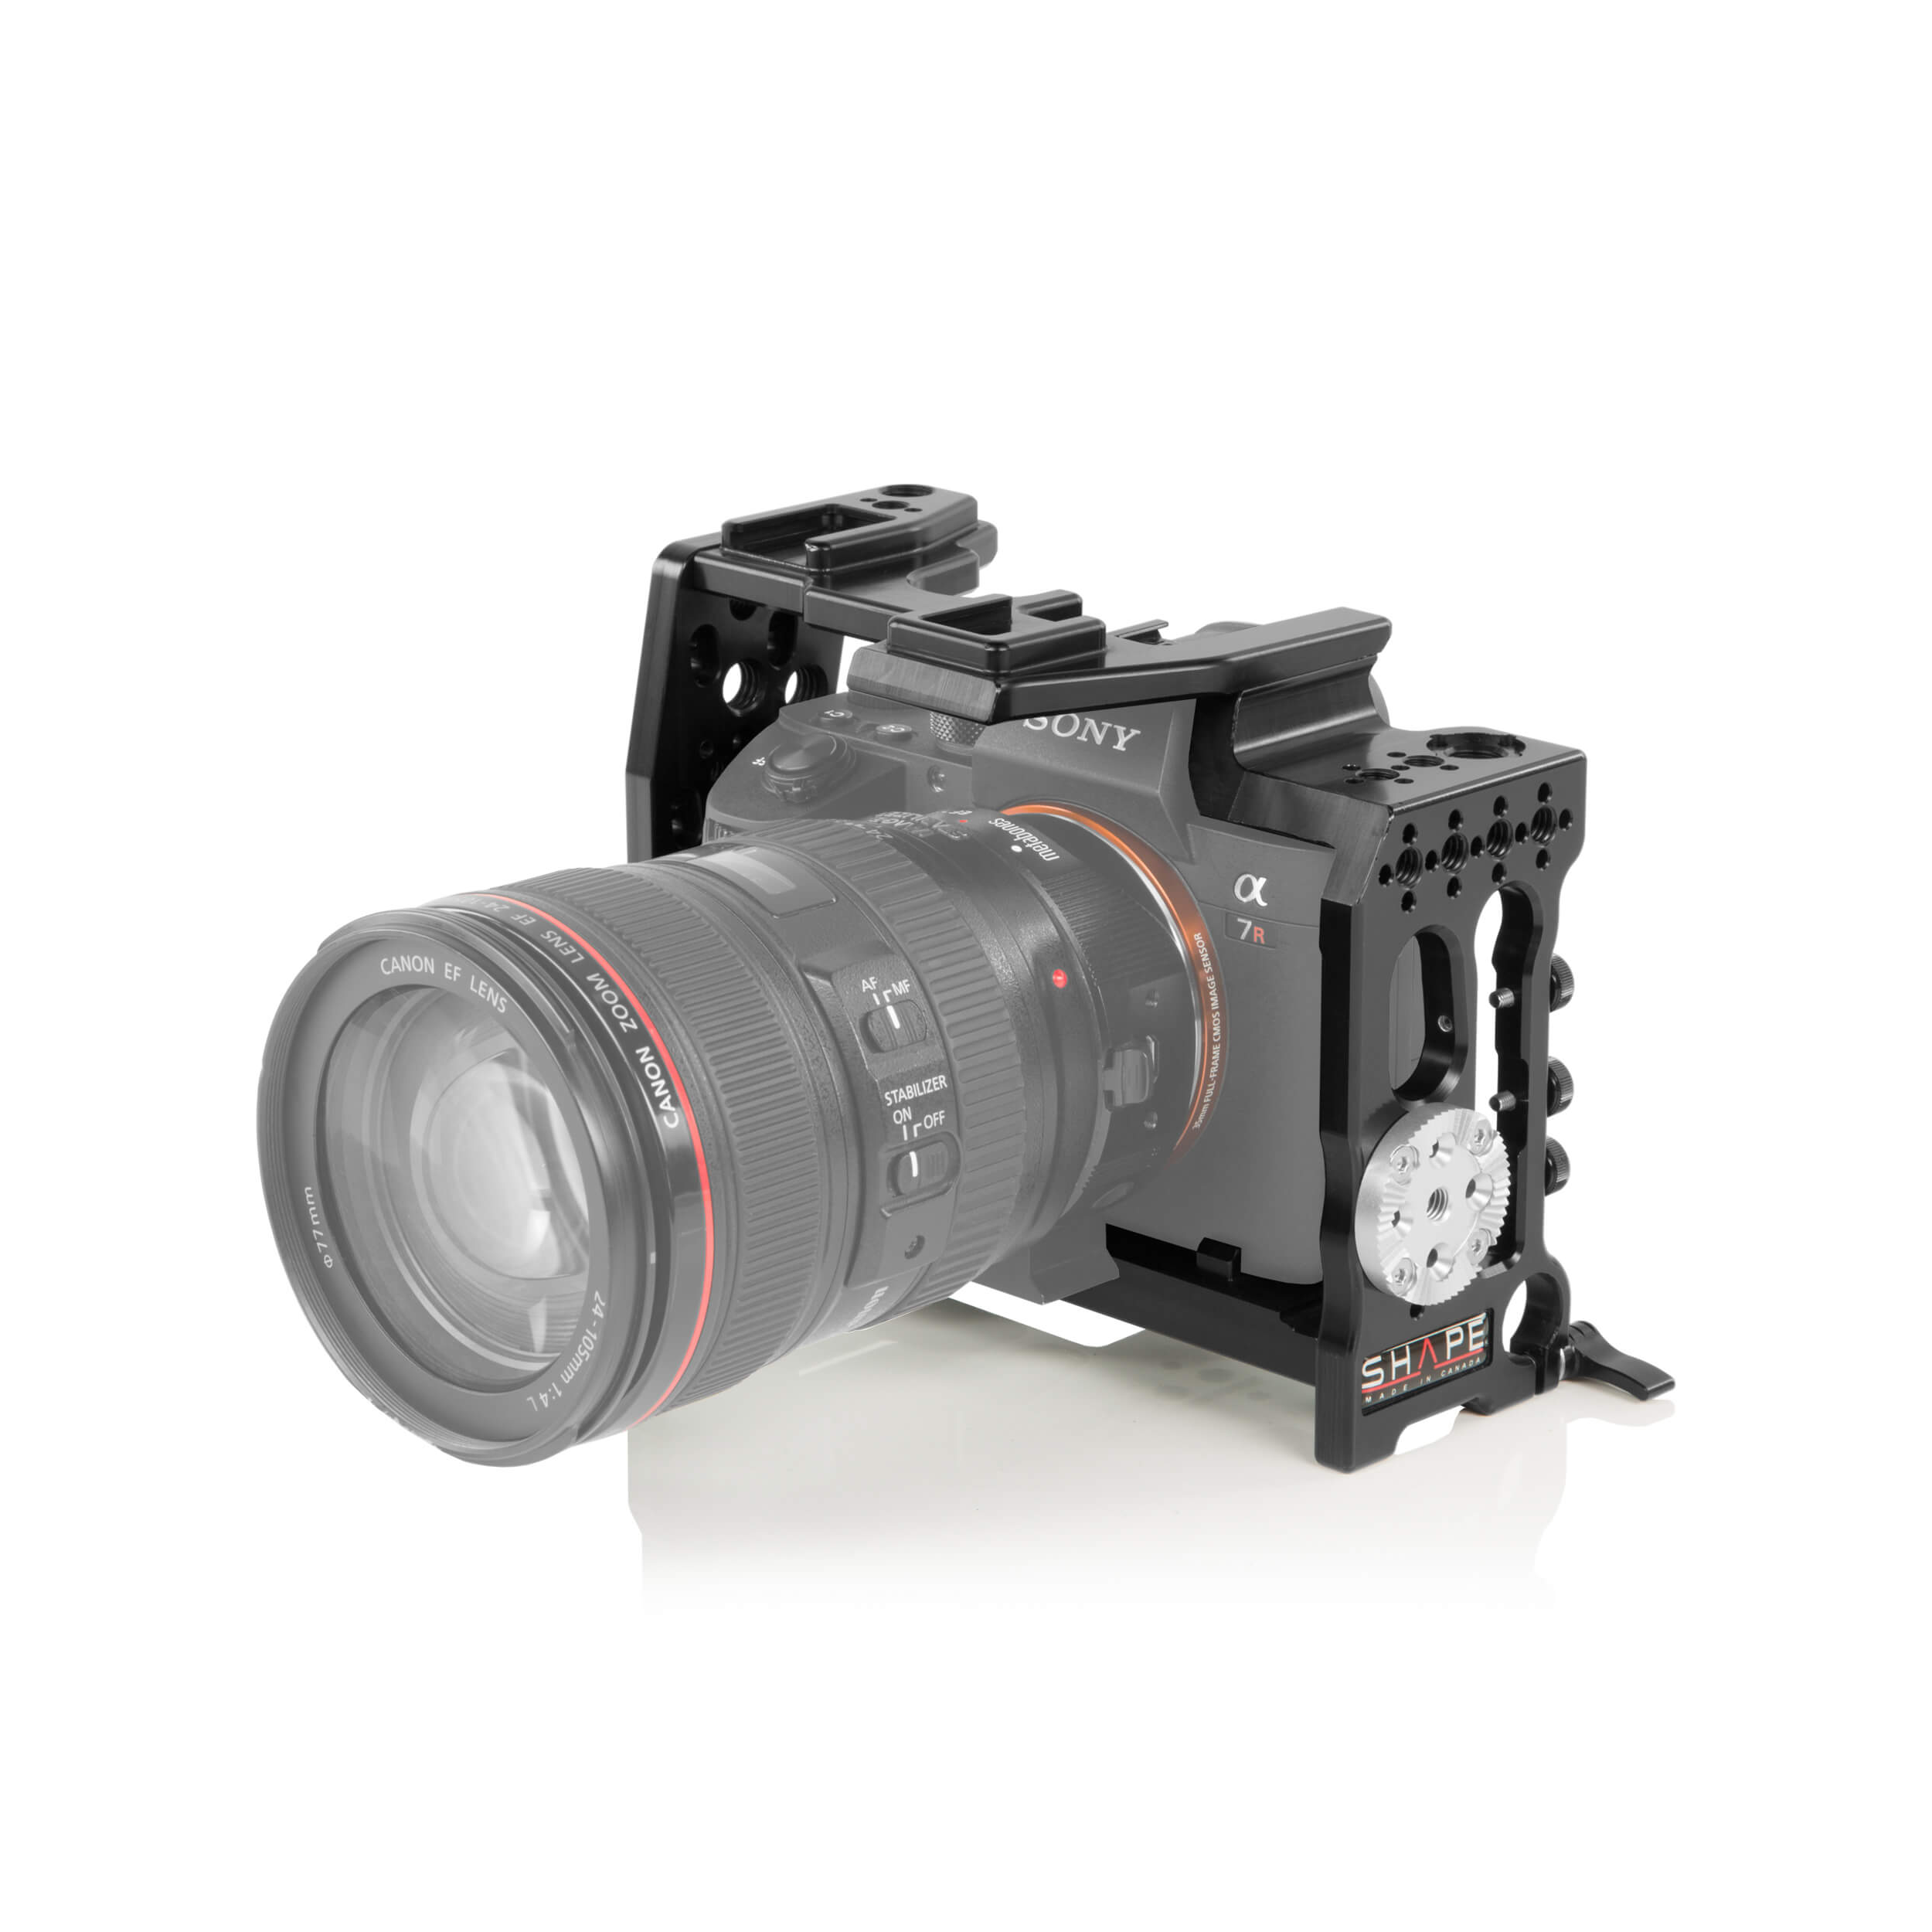 Kit de support d'épaule de forme pour la caméra Sony A7R III / A7 III